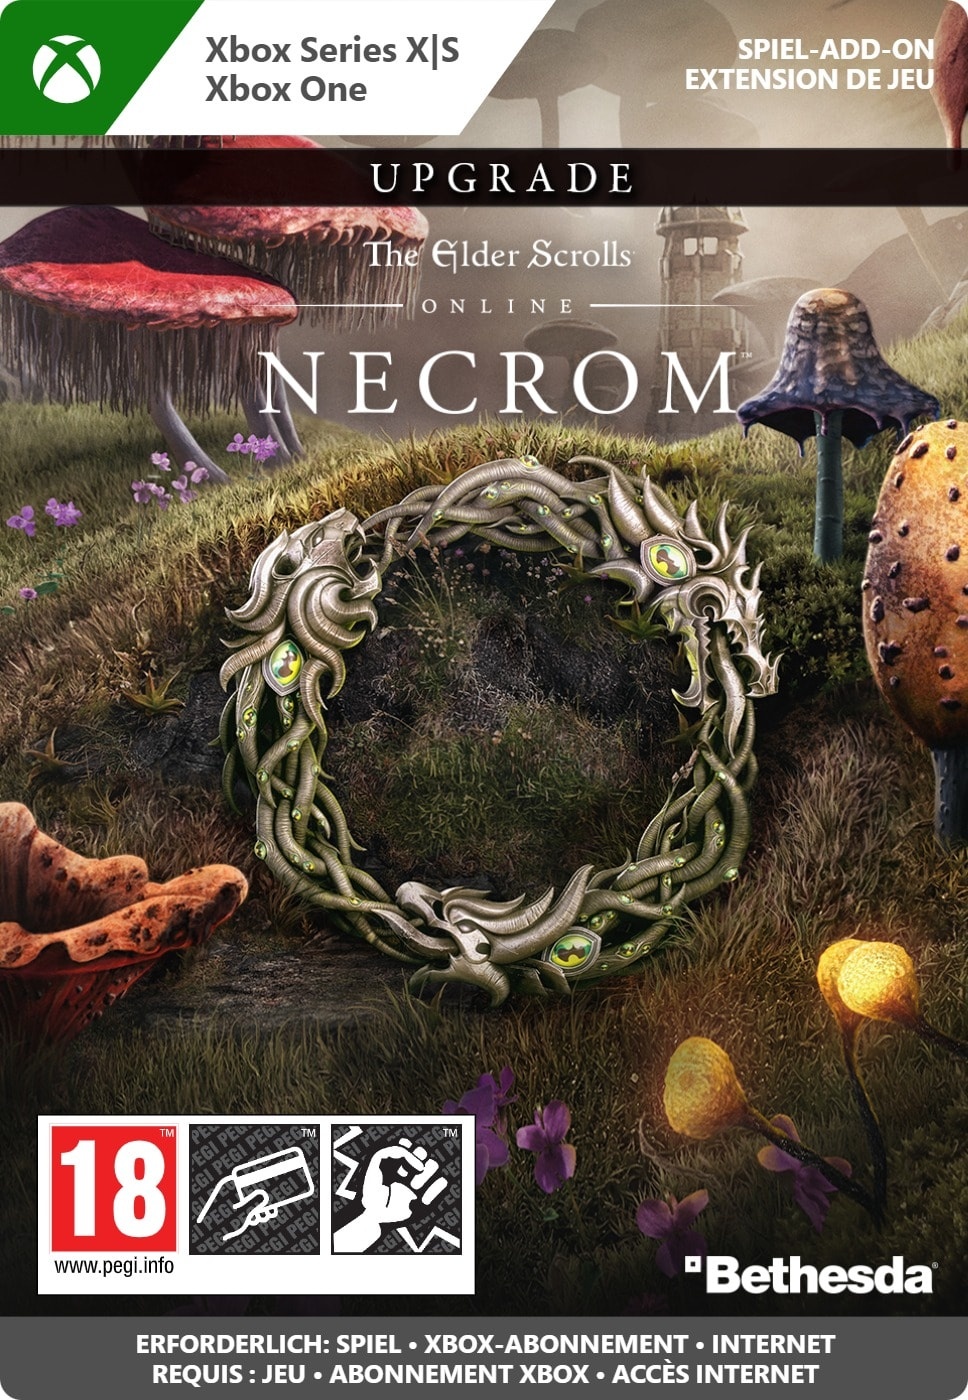 Xbox The Elder Scrolls Online Upgrade Necrom Download Code (Xbox) zum Sofortdownload